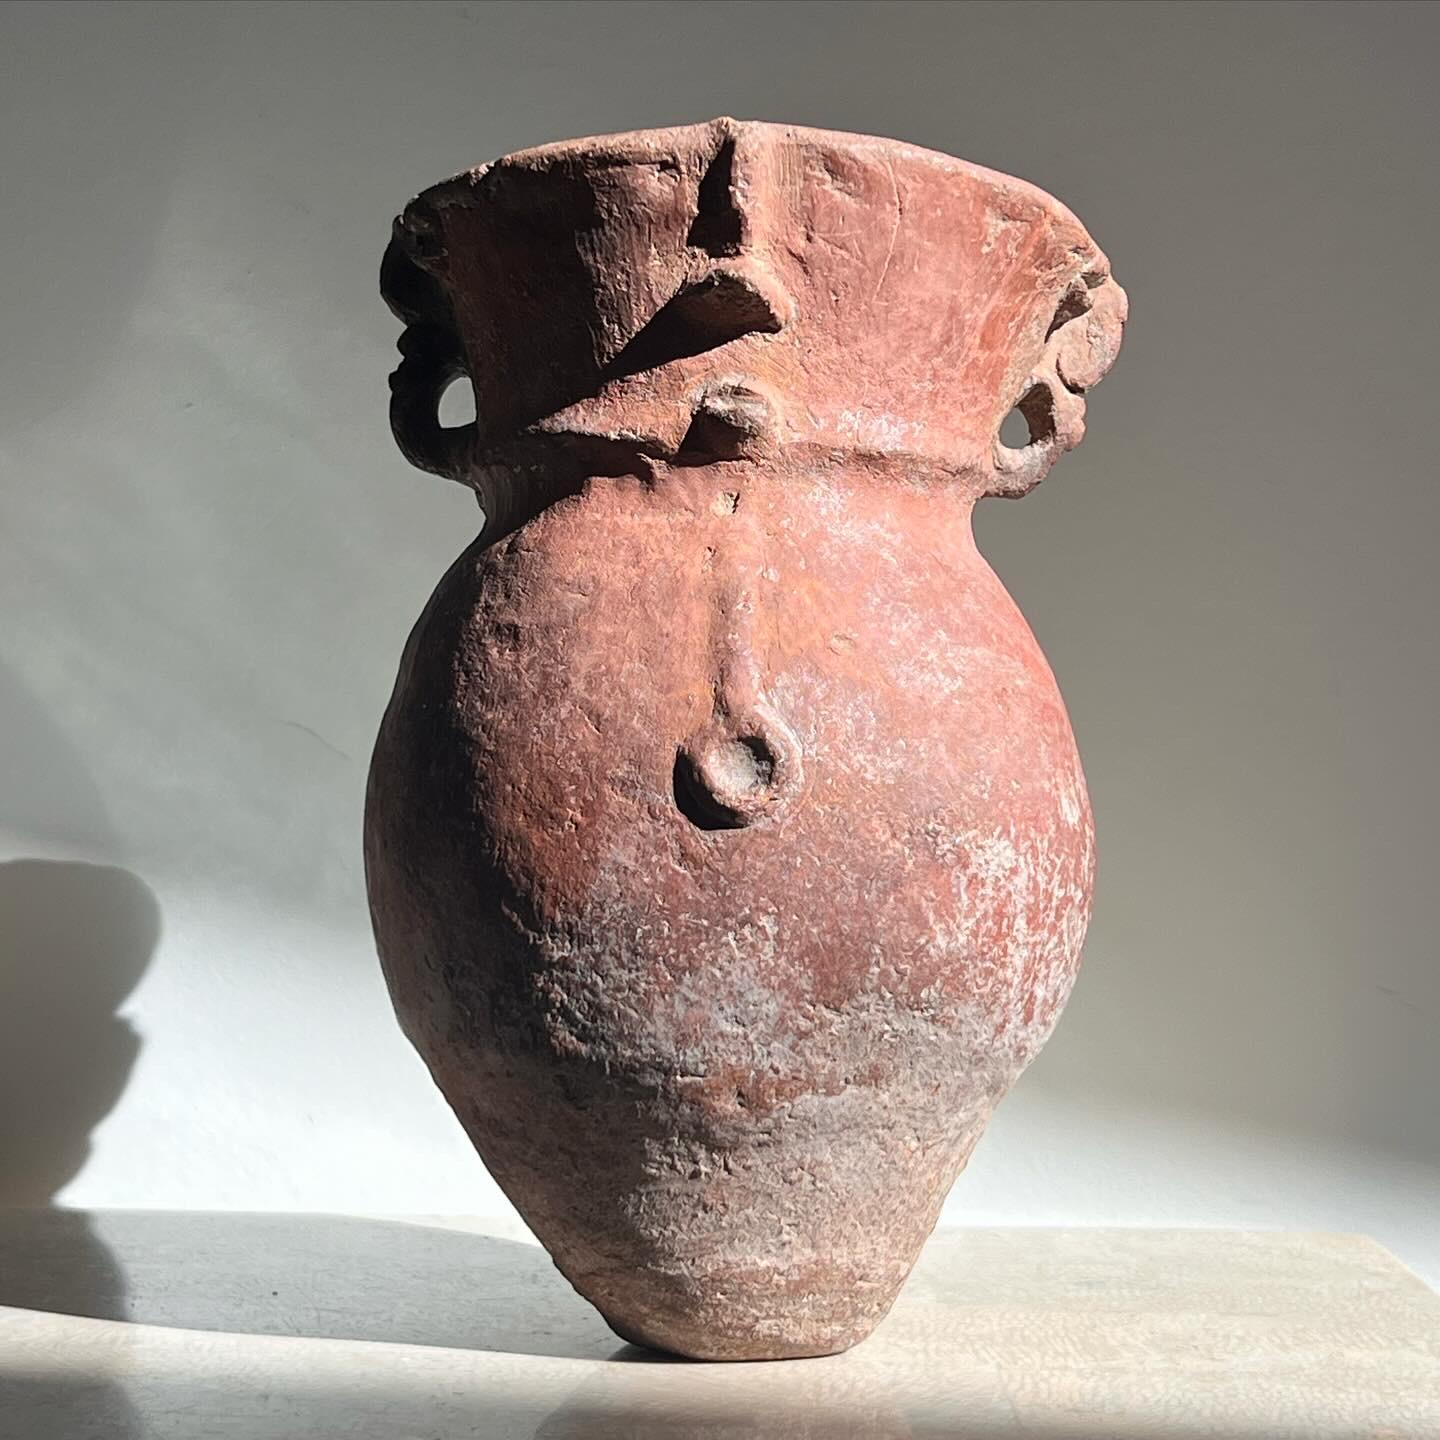 Ein präkolumbianisches Keramikgefäß. Es gibt handgeschnitzte Spuren eines Gesichts, die an frühe figurative Arbeiten erinnern. Die Patina weist Spuren von rotem Zinnober und mineralischen Ablagerungen auf, die auf das Alter des Stücks schließen